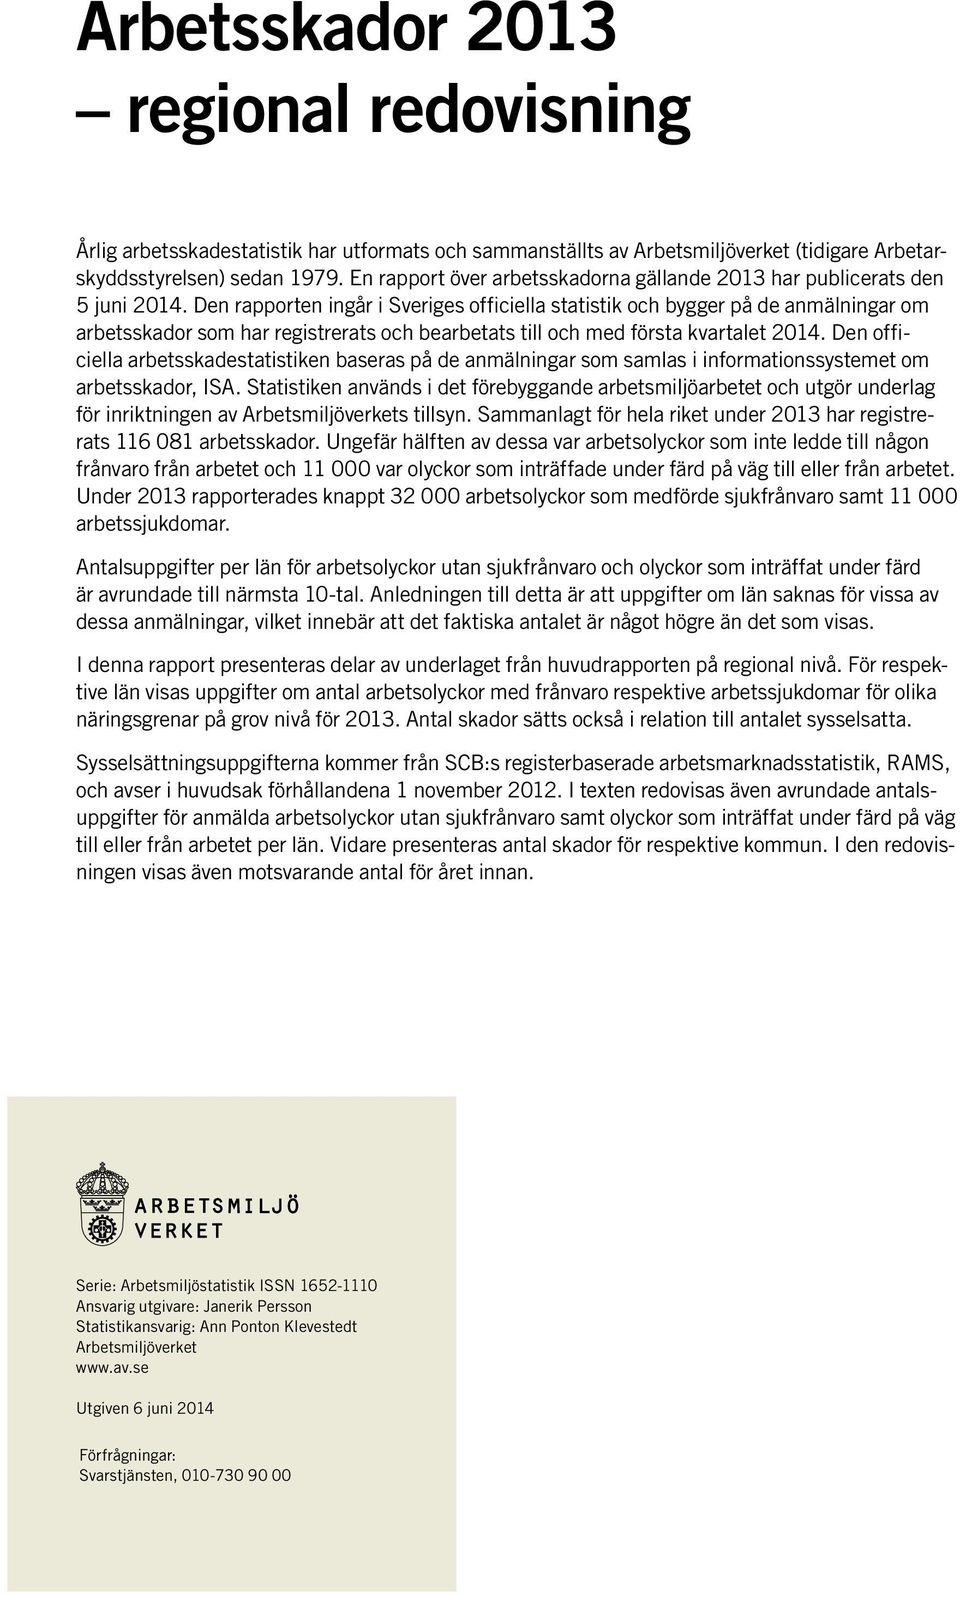 Den rapporten ingår i Sveriges officiella statistik och bygger på de anmälningar om arbetsskador som har registrerats och bearbetats till och med första kvartalet 2014.